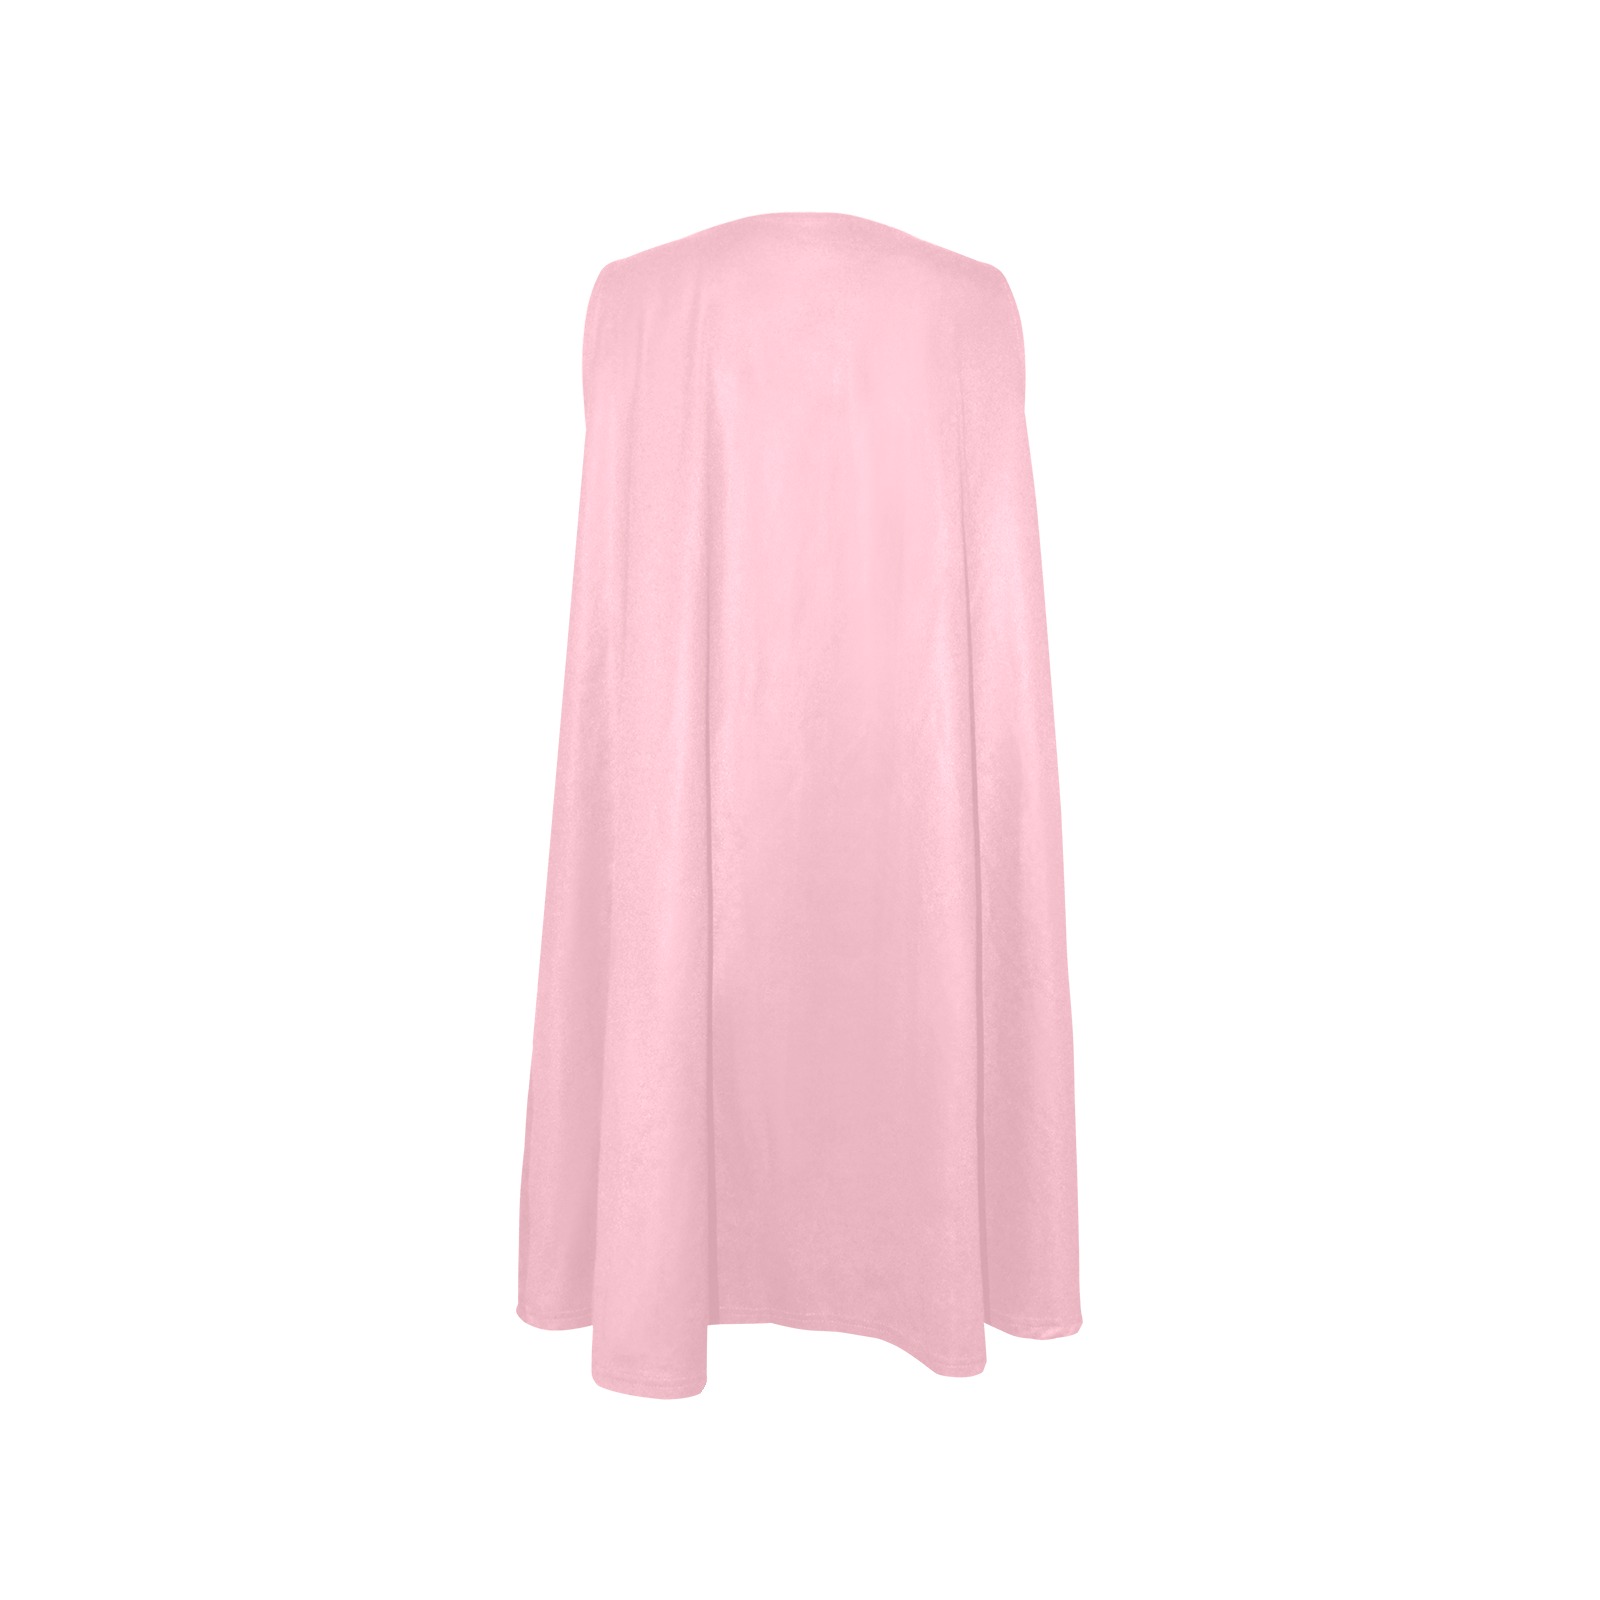 Patchwork Heart Teddy Light Pink Sleeveless A-Line Pocket Dress (Model D57)